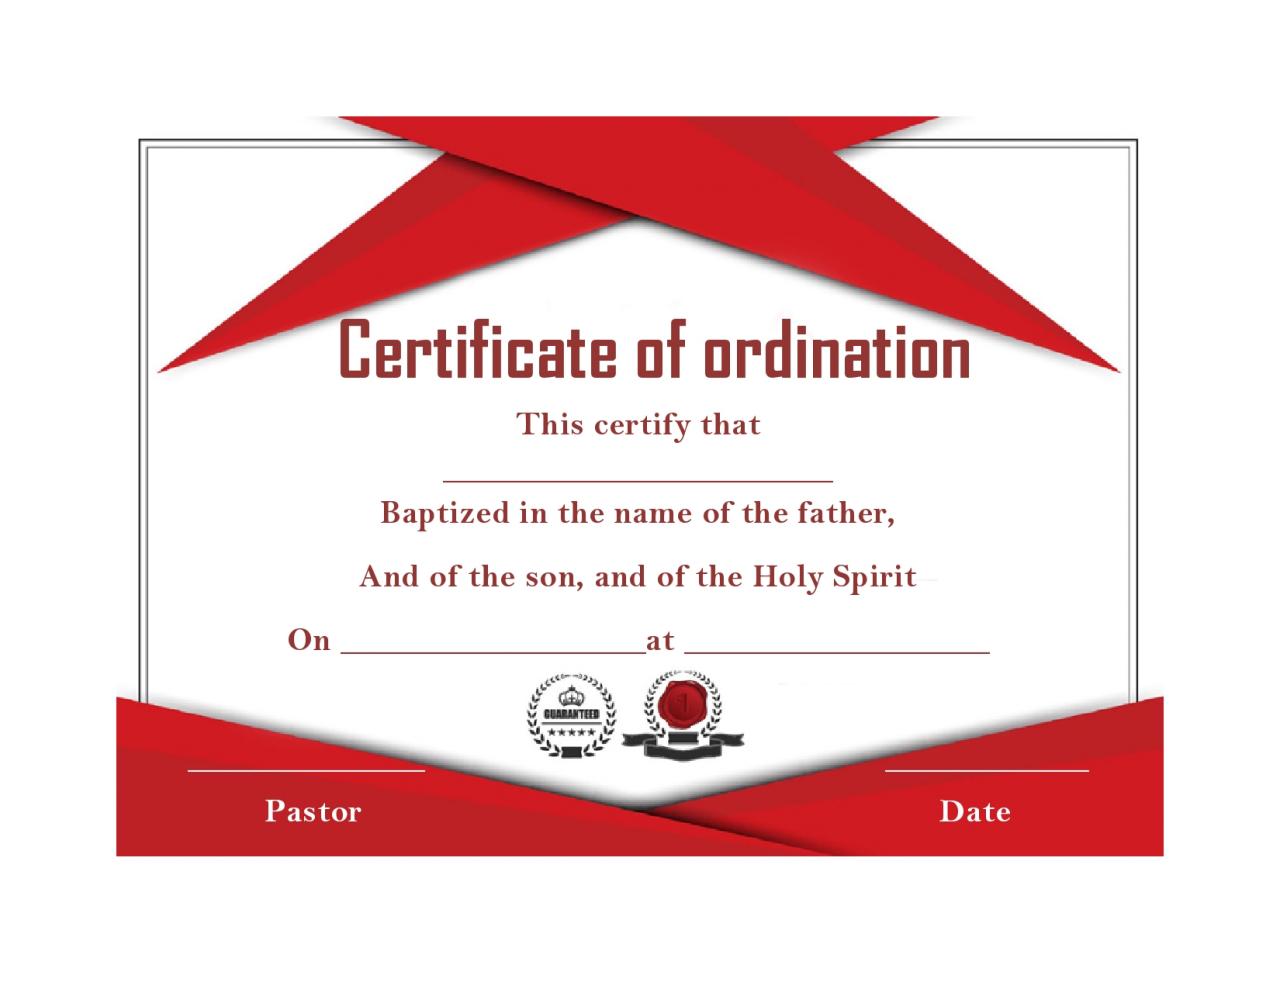 Certificado de ordenación libre 09